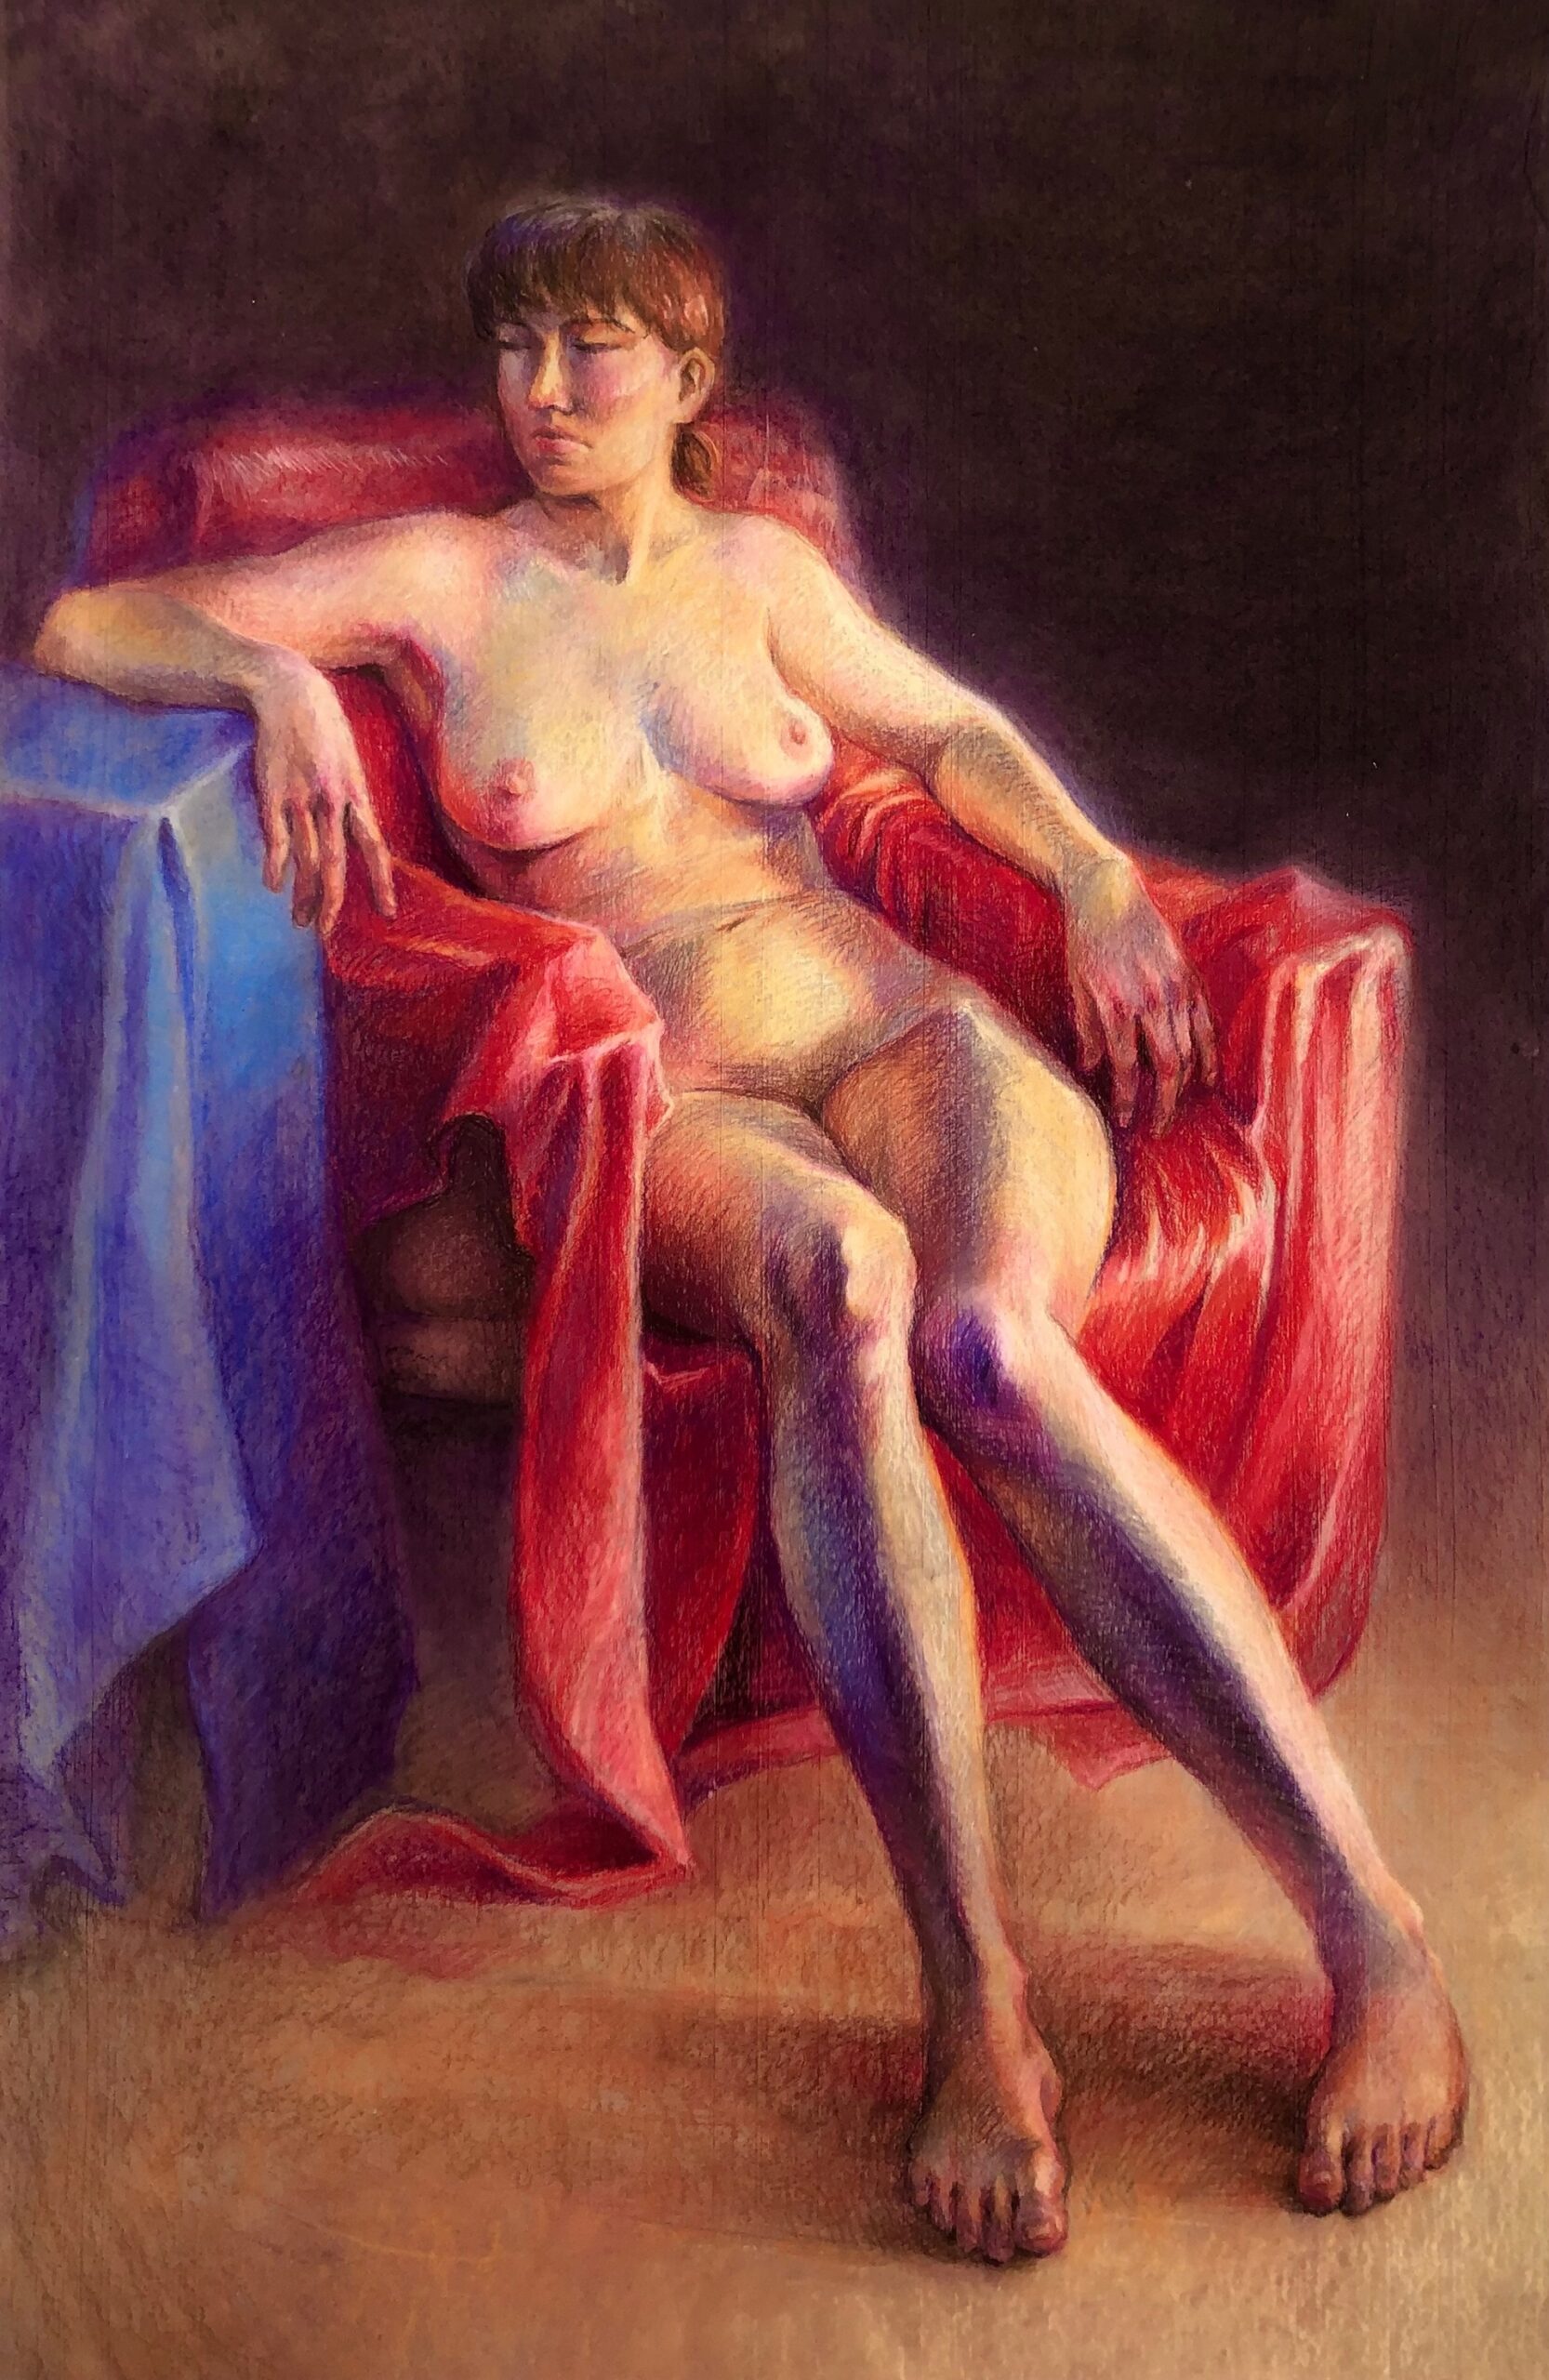 Oświetlona ciepłym światłem od prawej strony młoda, piękna kobieta o jasnym ciele siedząca na fotelu okrytym czerwonym suknem, opierająca łokieć o ultramarynowy podest po lewej stronie rysunku. Za nią mrok.